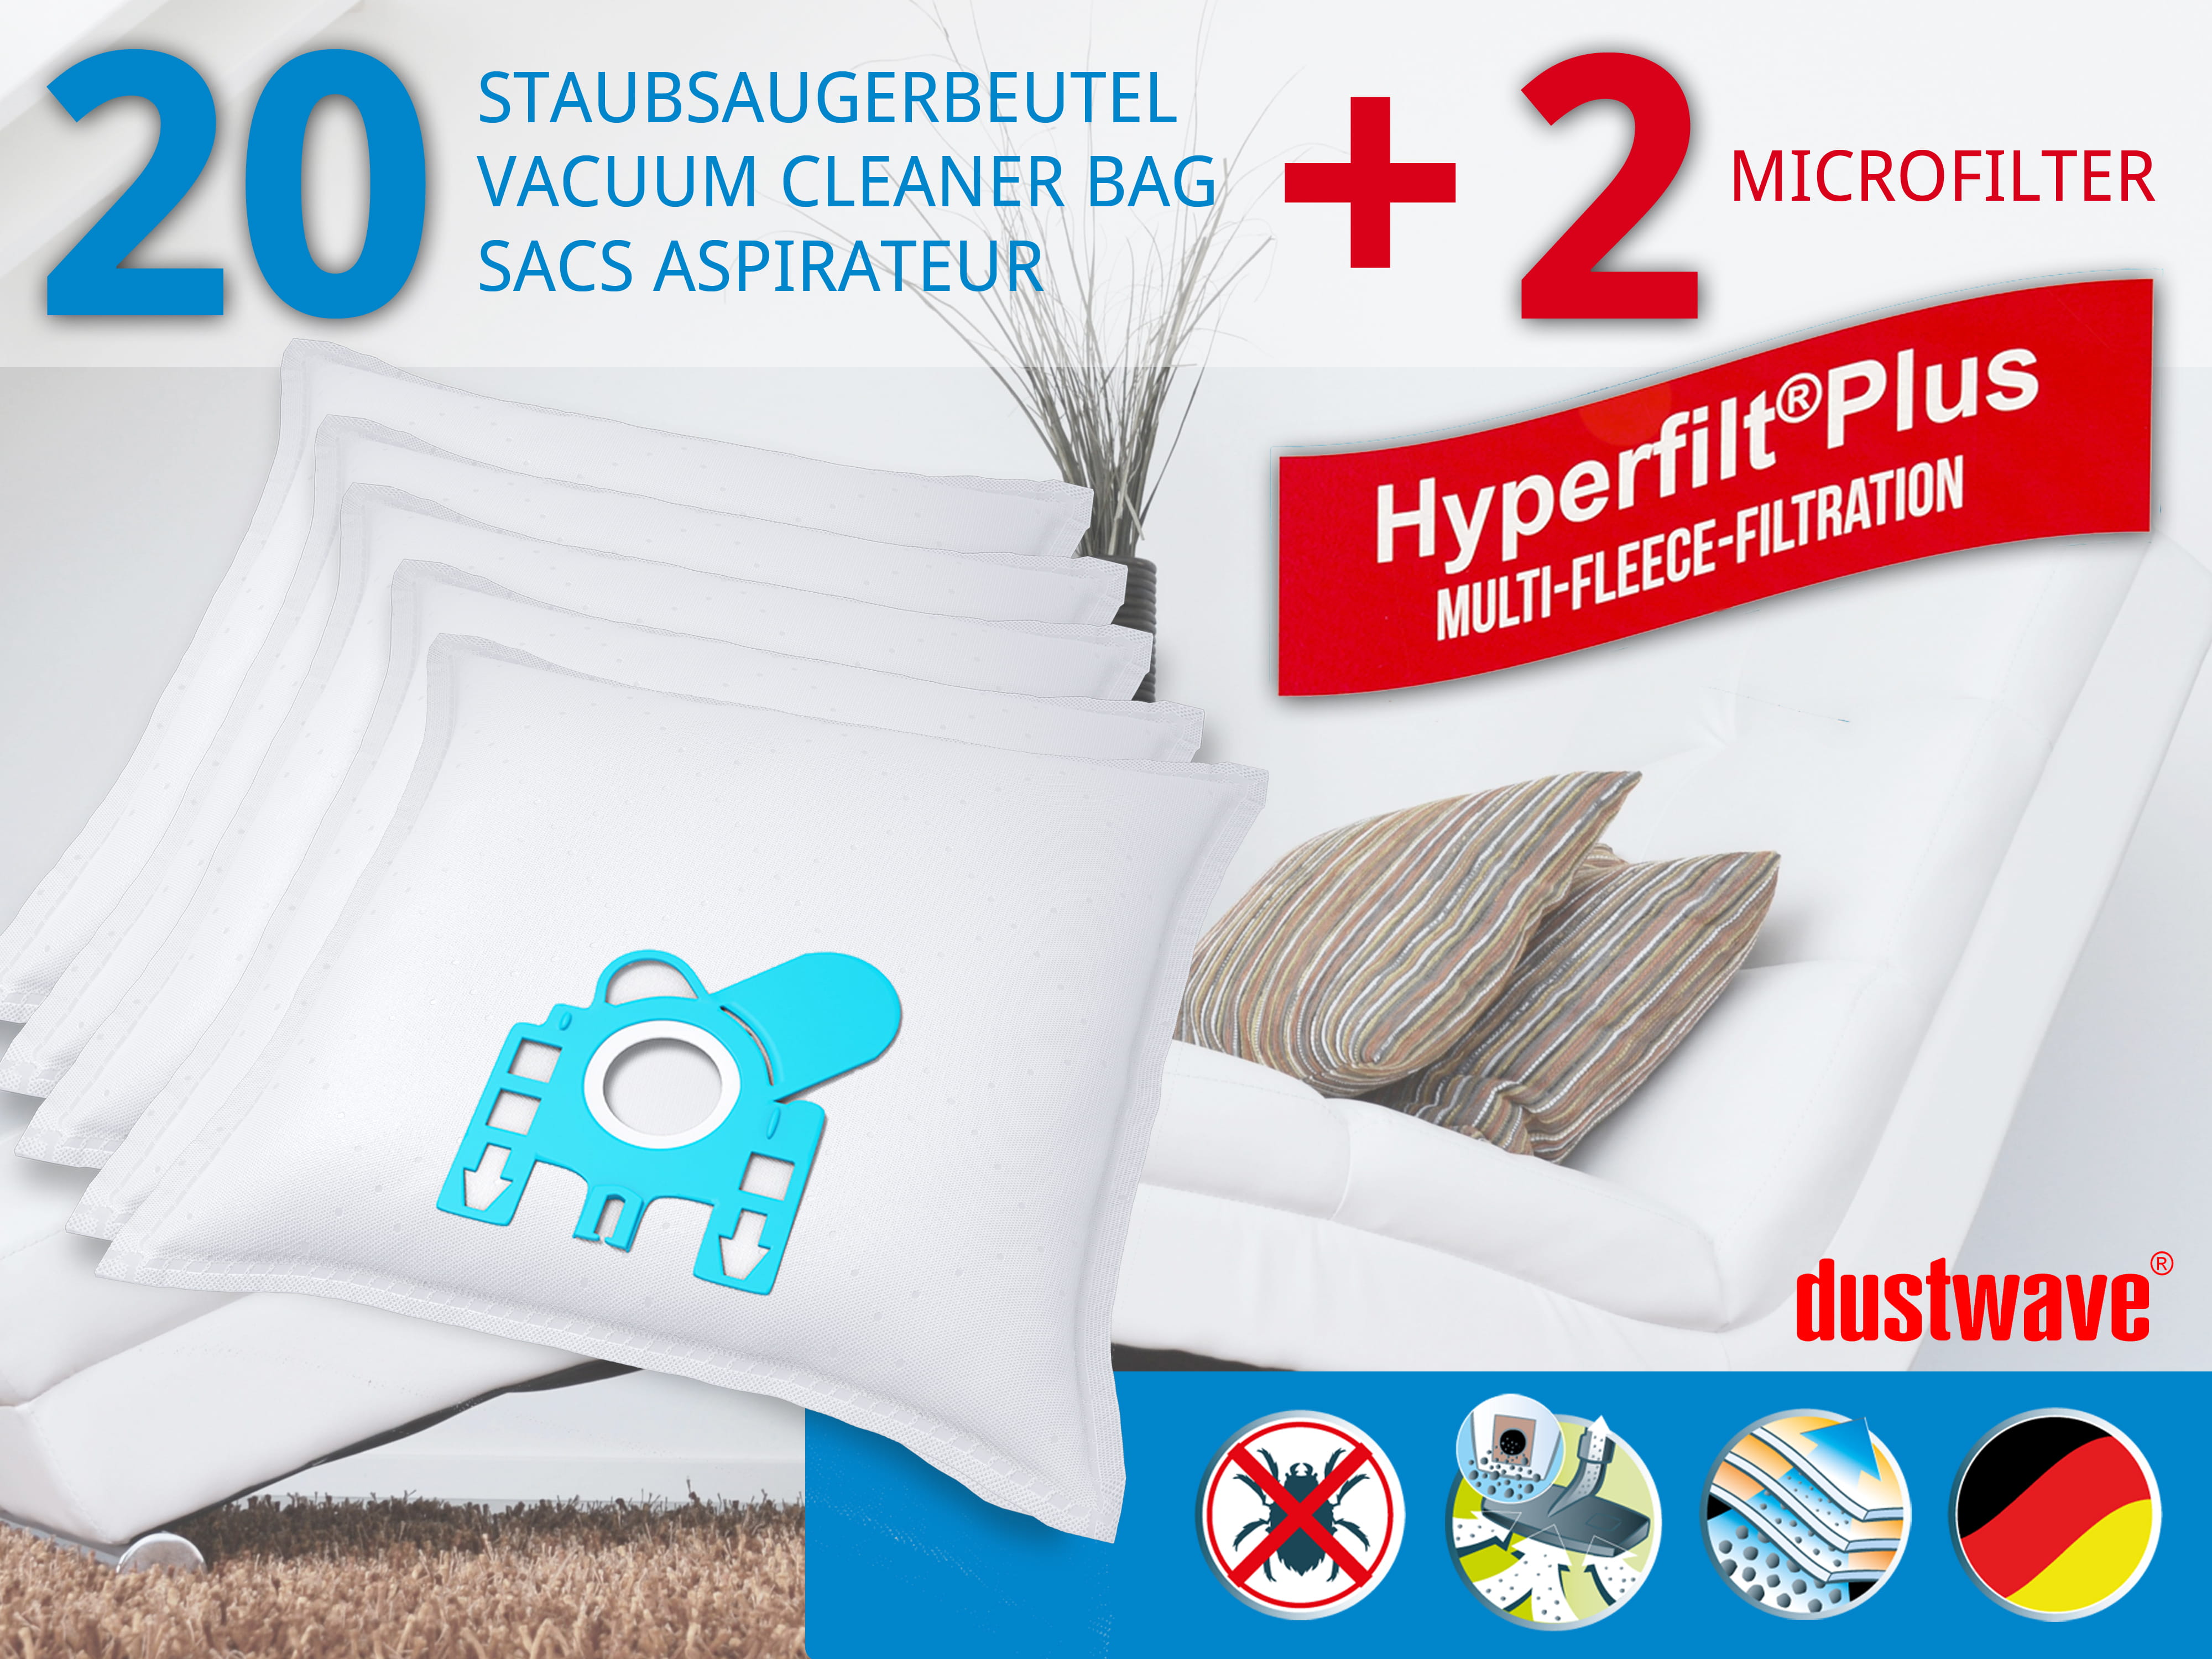 Dustwave® 20 Staubsaugerbeutel für Hoover SC226... / TRSC226 - hocheffizient, mehrlagiges Mikrovlies mit Hygieneverschluss - Made in Germany